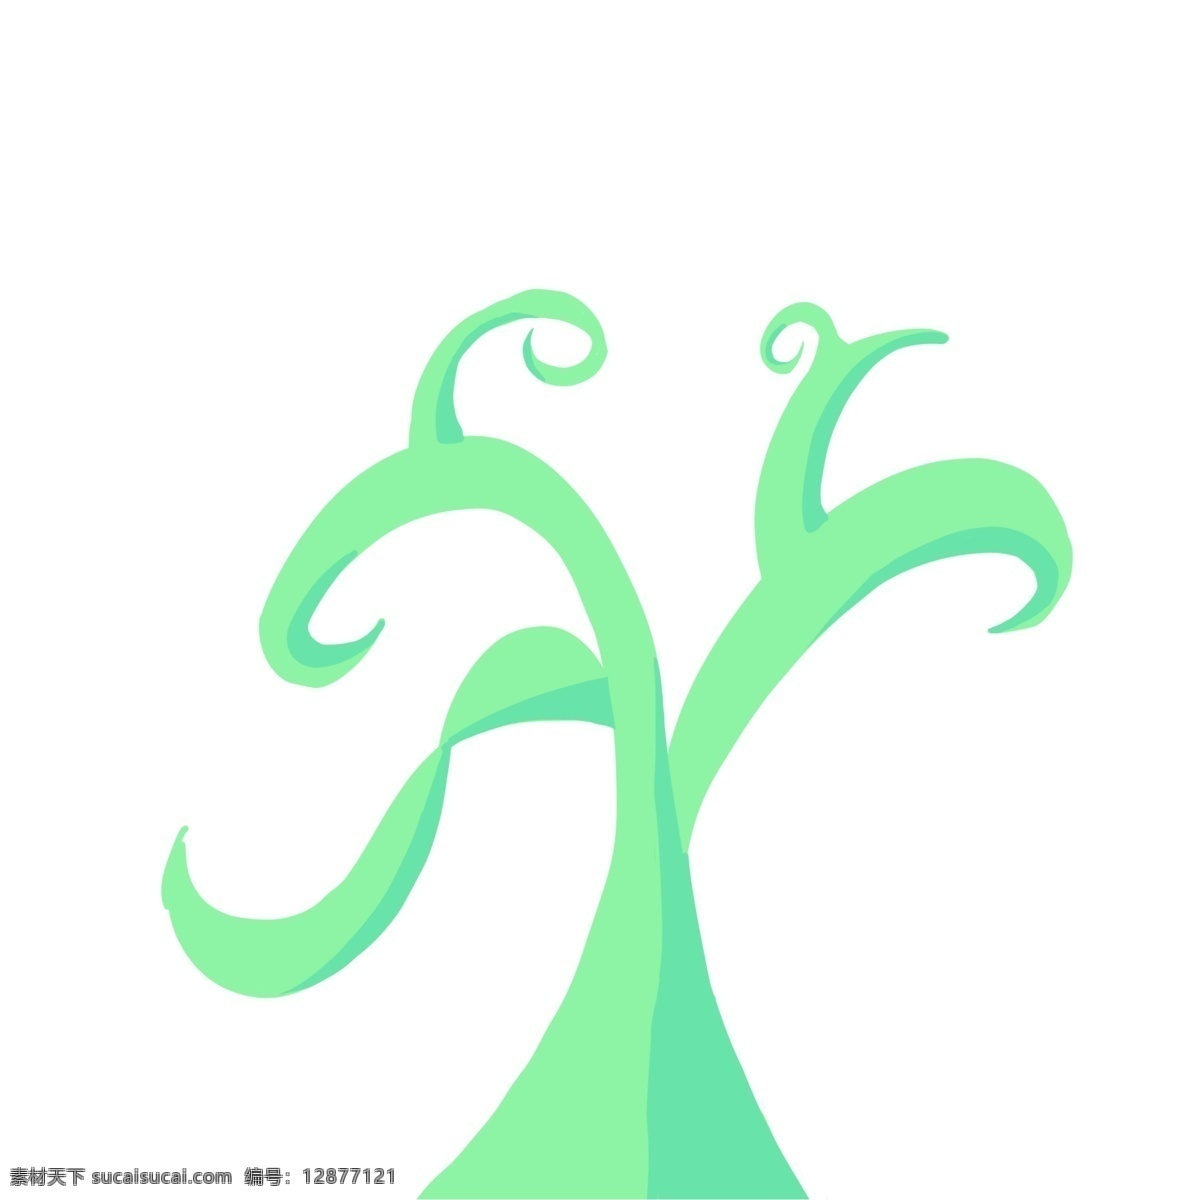 漂亮 绿色 藤蔓 插画 漂亮的藤蔓 绿色藤蔓 植物 绿色植物 花藤 枝蔓 植物叶子 花枝 植物插画